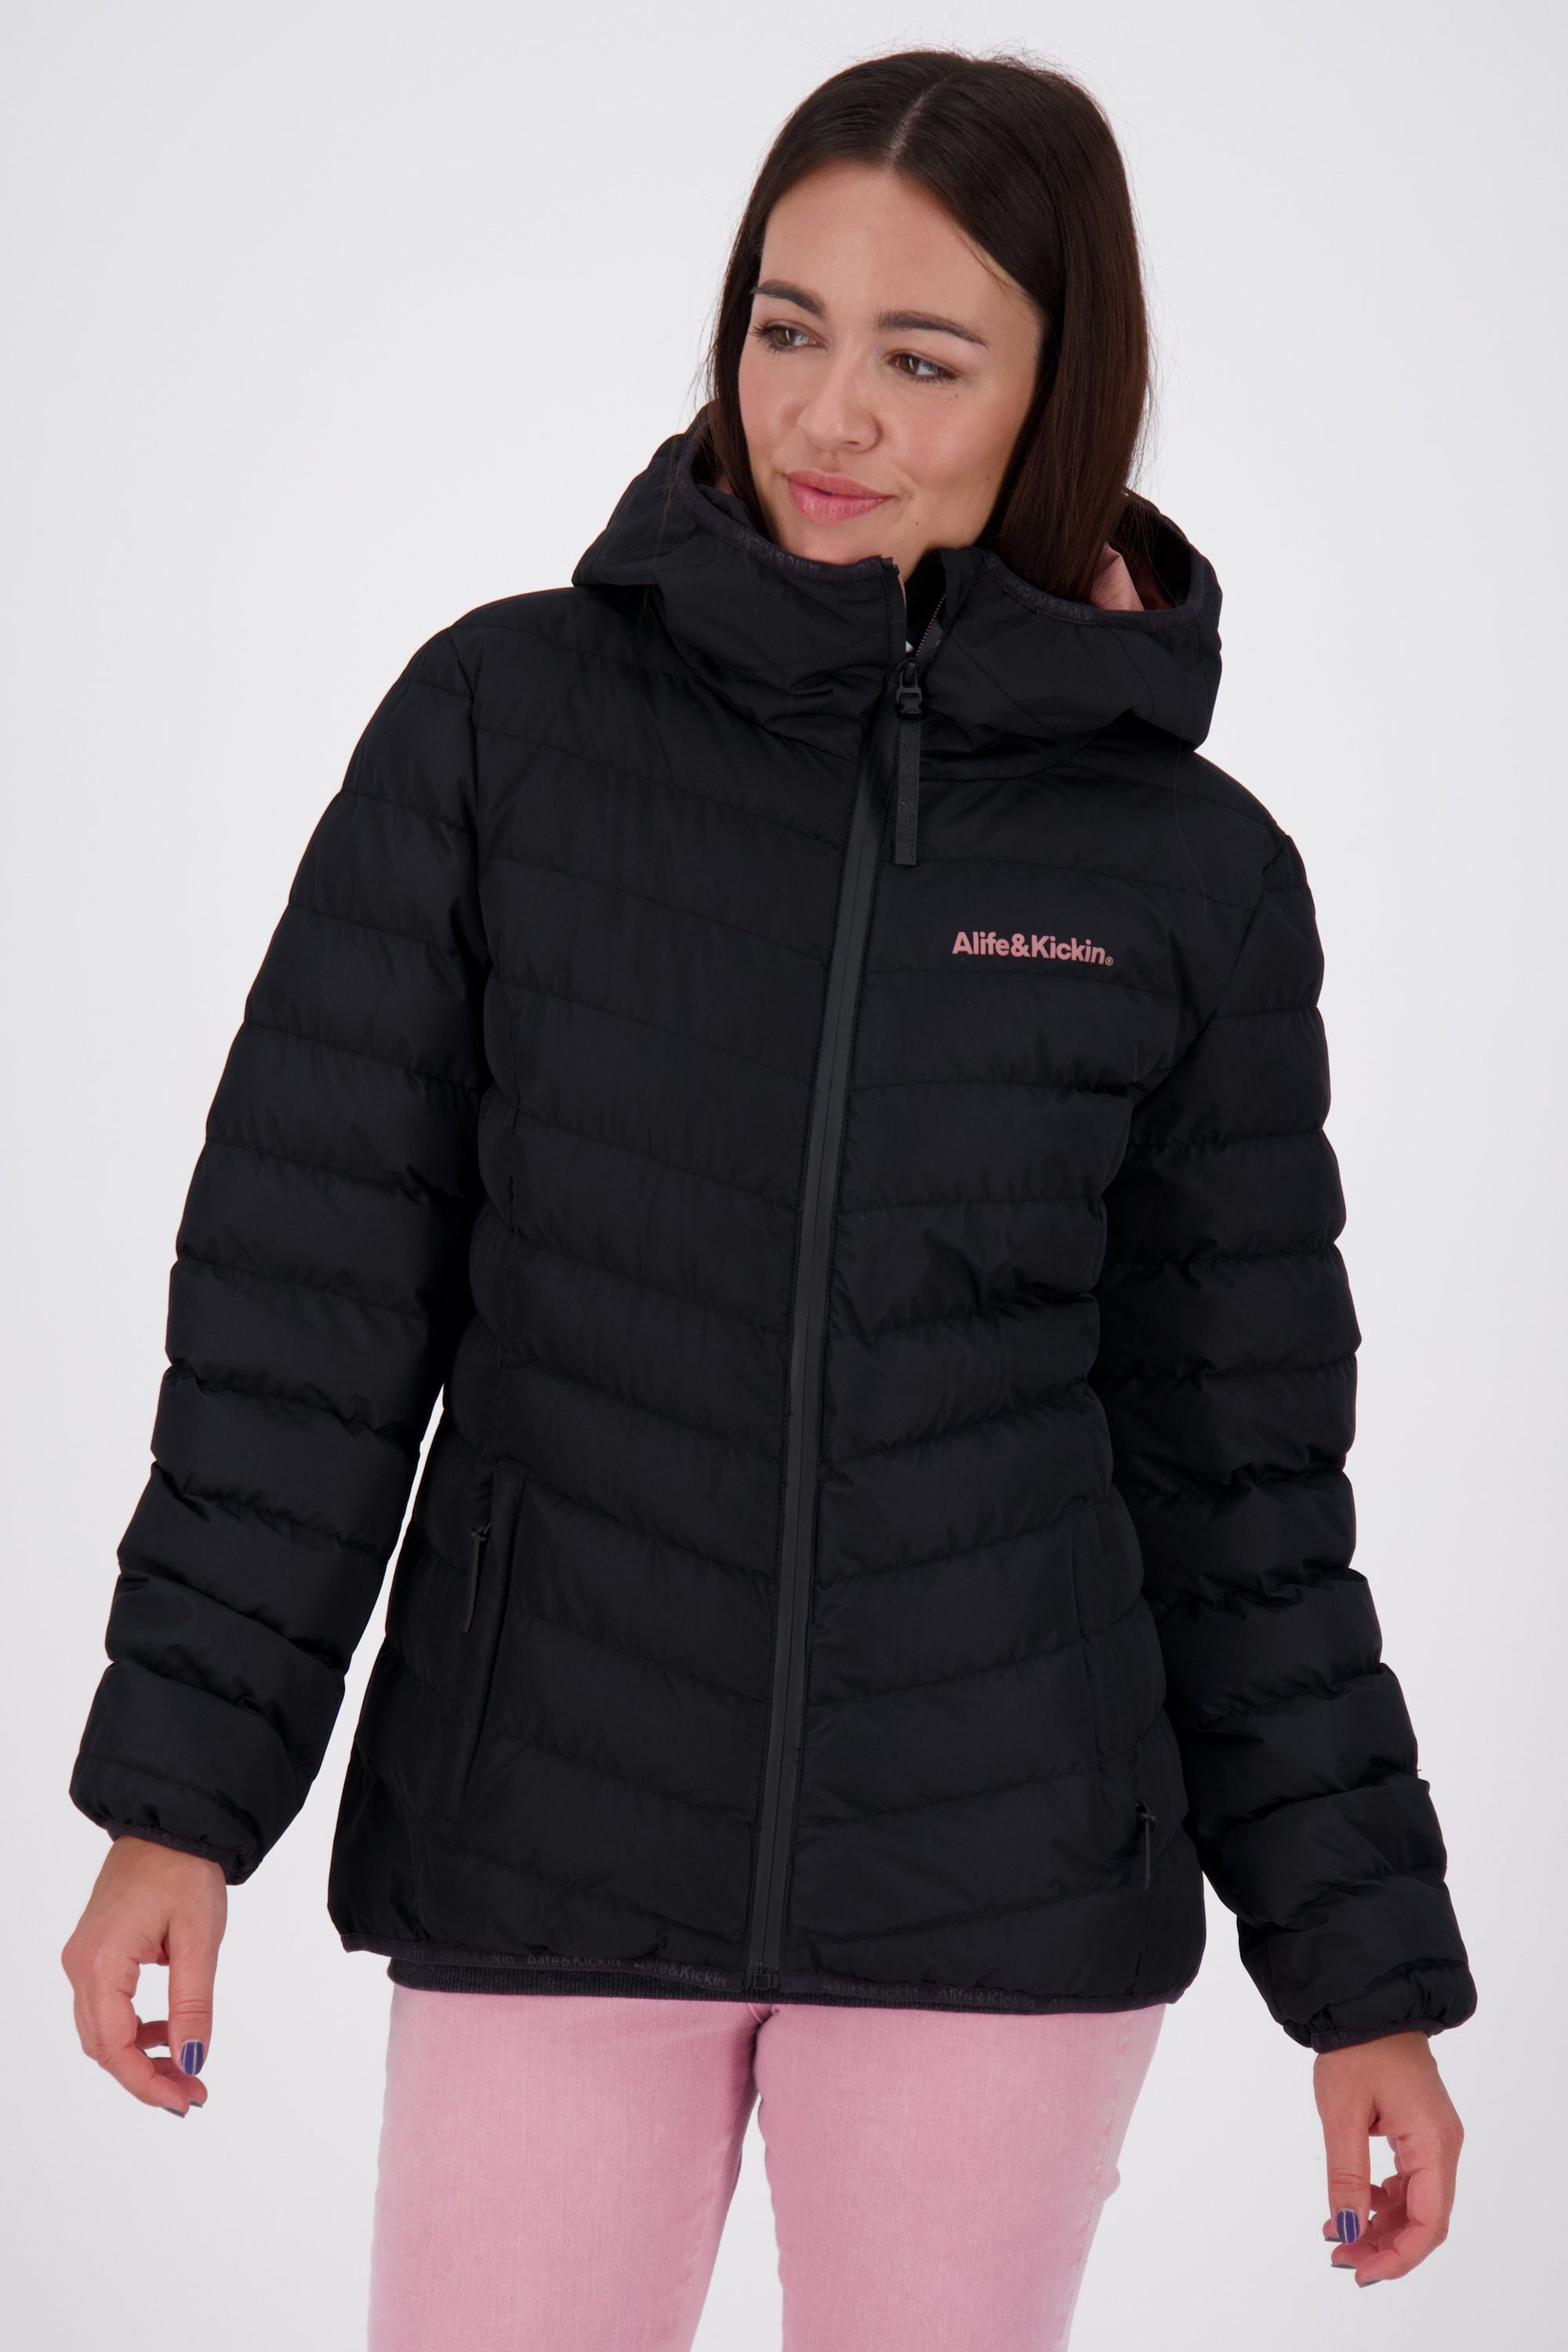 [Sorgfältig ausgewählte Produkte] Alife & Kickin Winterjacke Jacke RabeaAK A Jacket moonless gefütterte Winterjacke, Damen